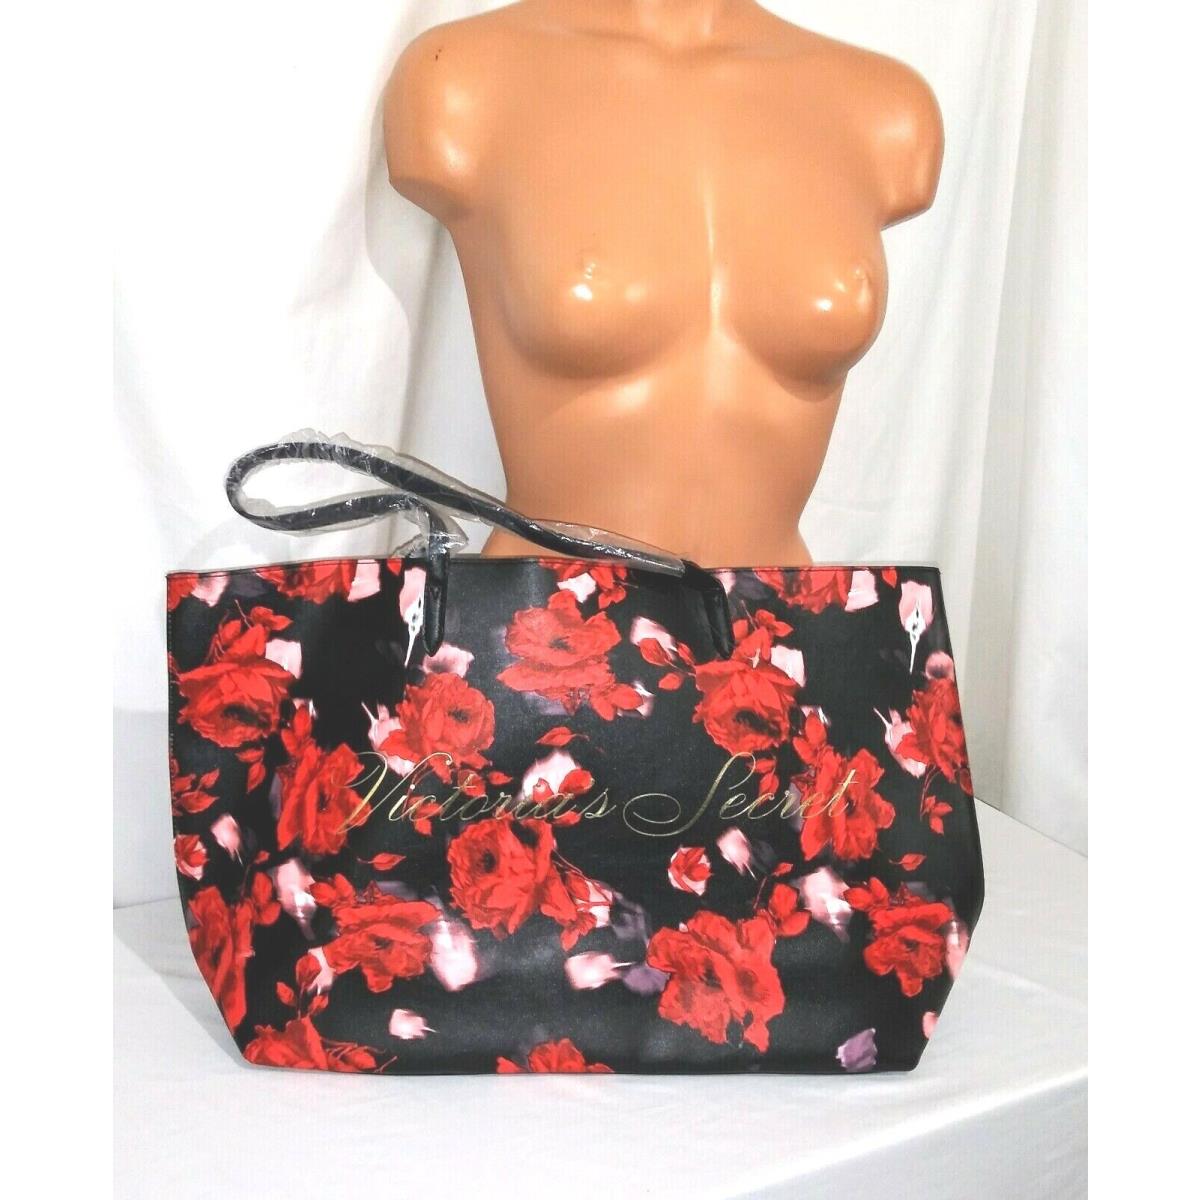 Victorias Secret Tote Bag Black Red Roses Large - Victoria's Secret Bag